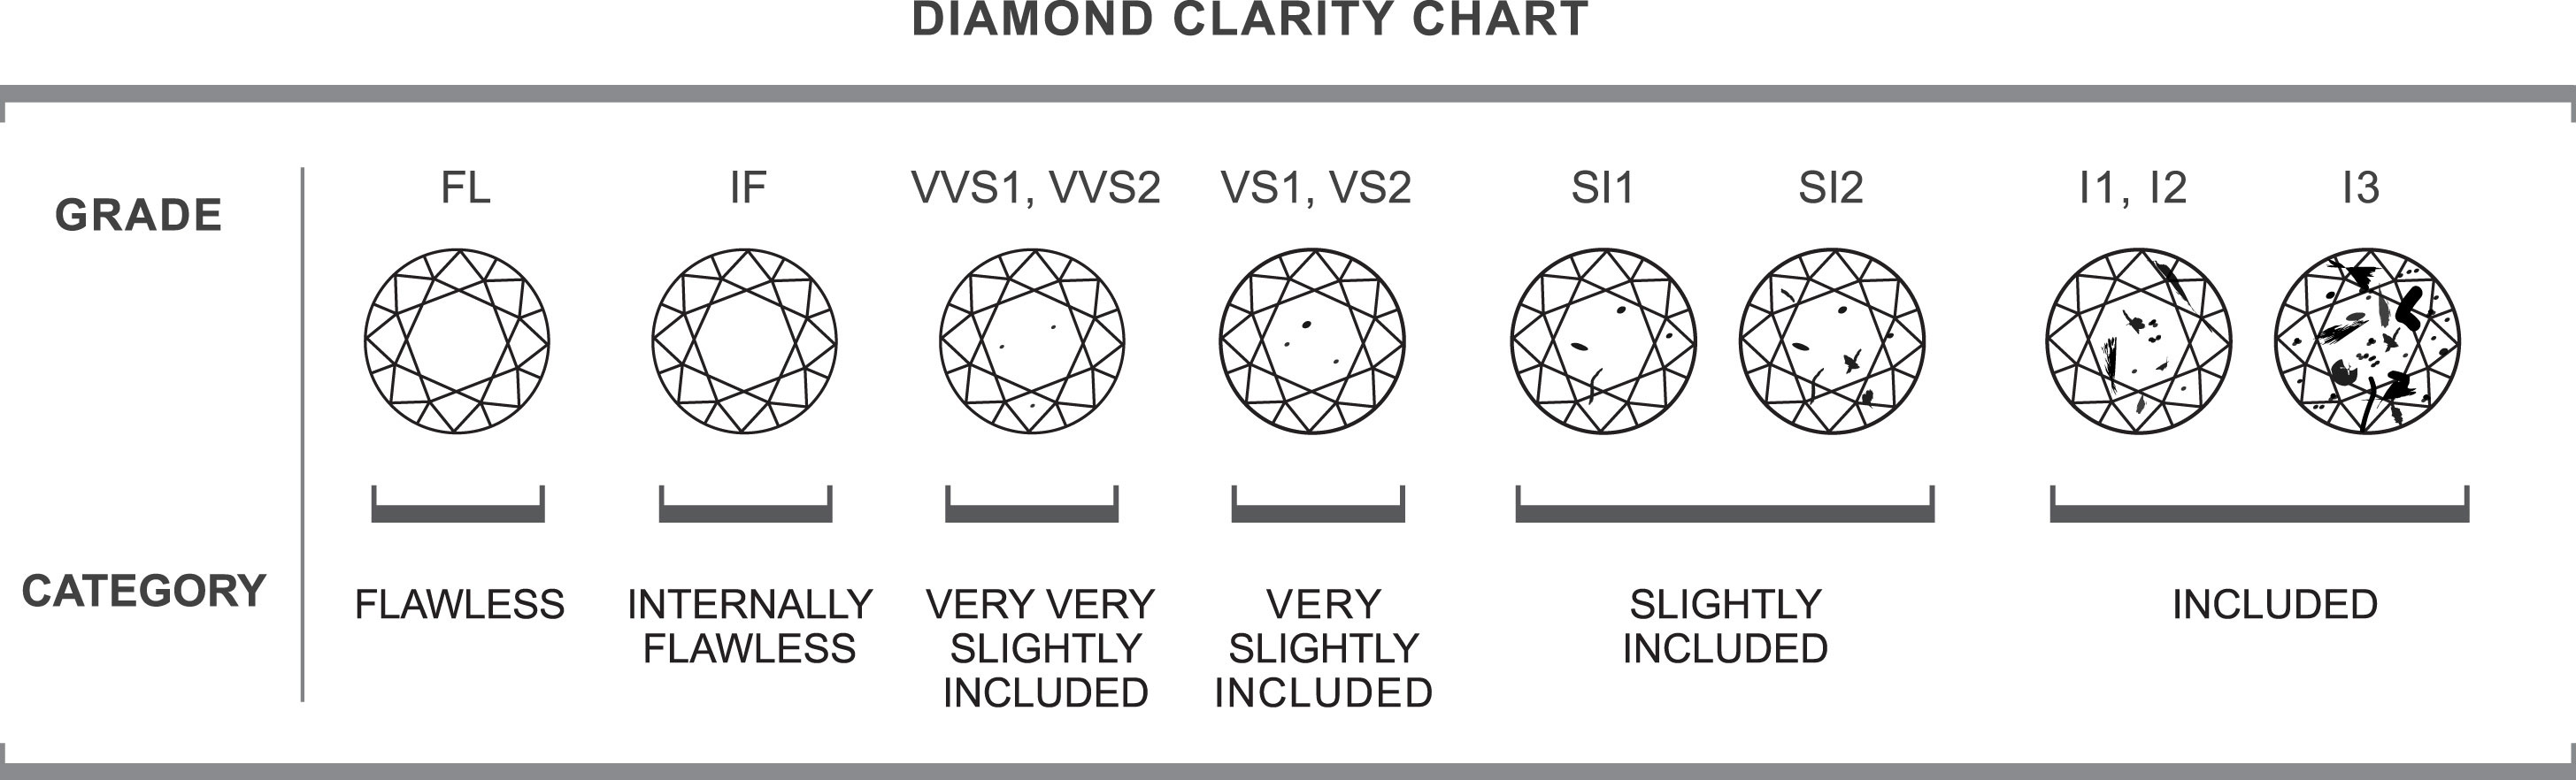 4 C S Chart